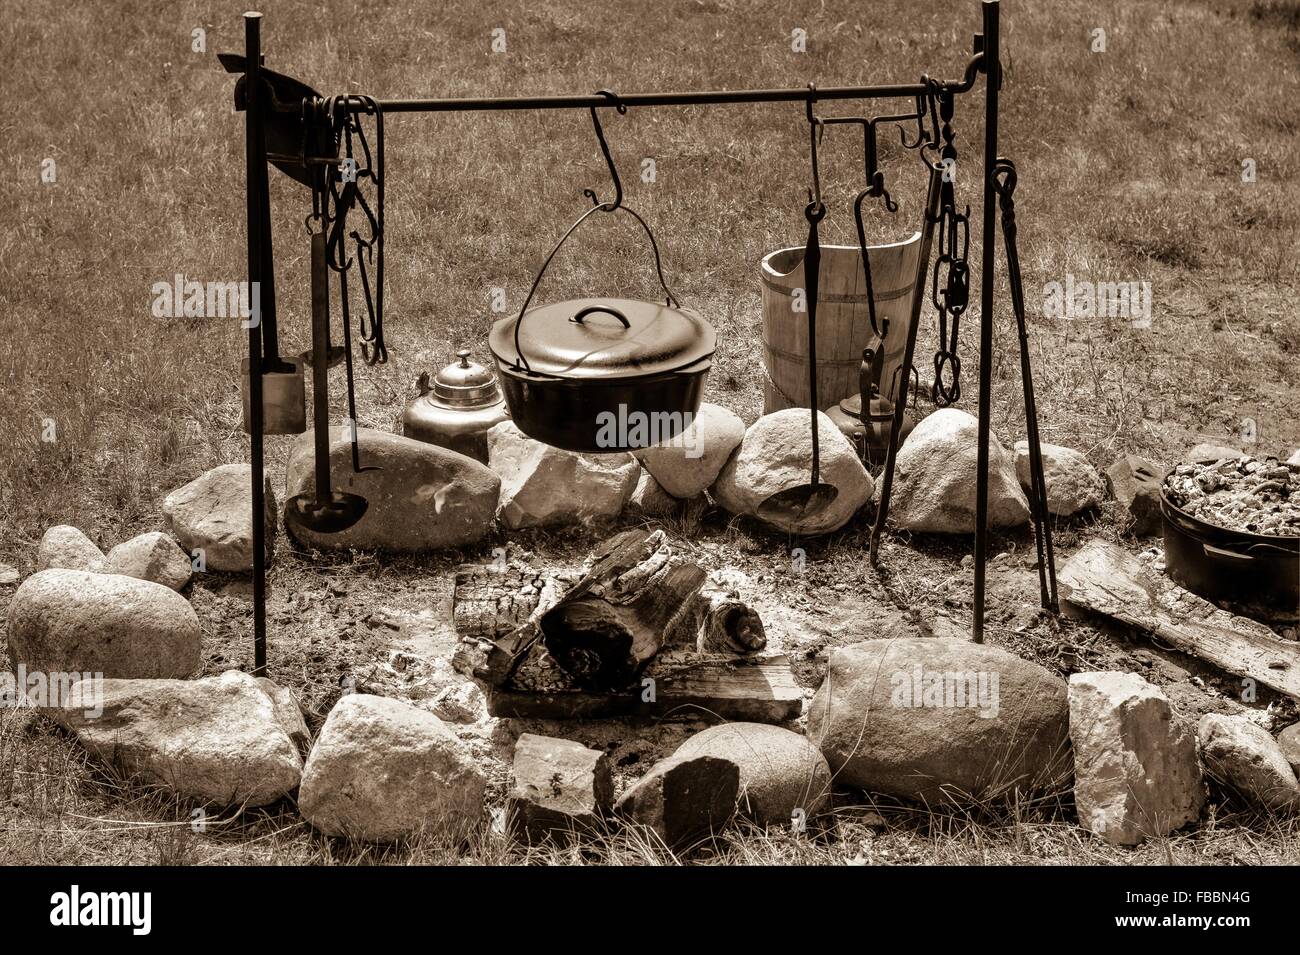 Am Lagerfeuer kochen. Kessel über dem Lagerfeuer mit Pionier Kochutensilien in schwarz und weiß. Stockfoto